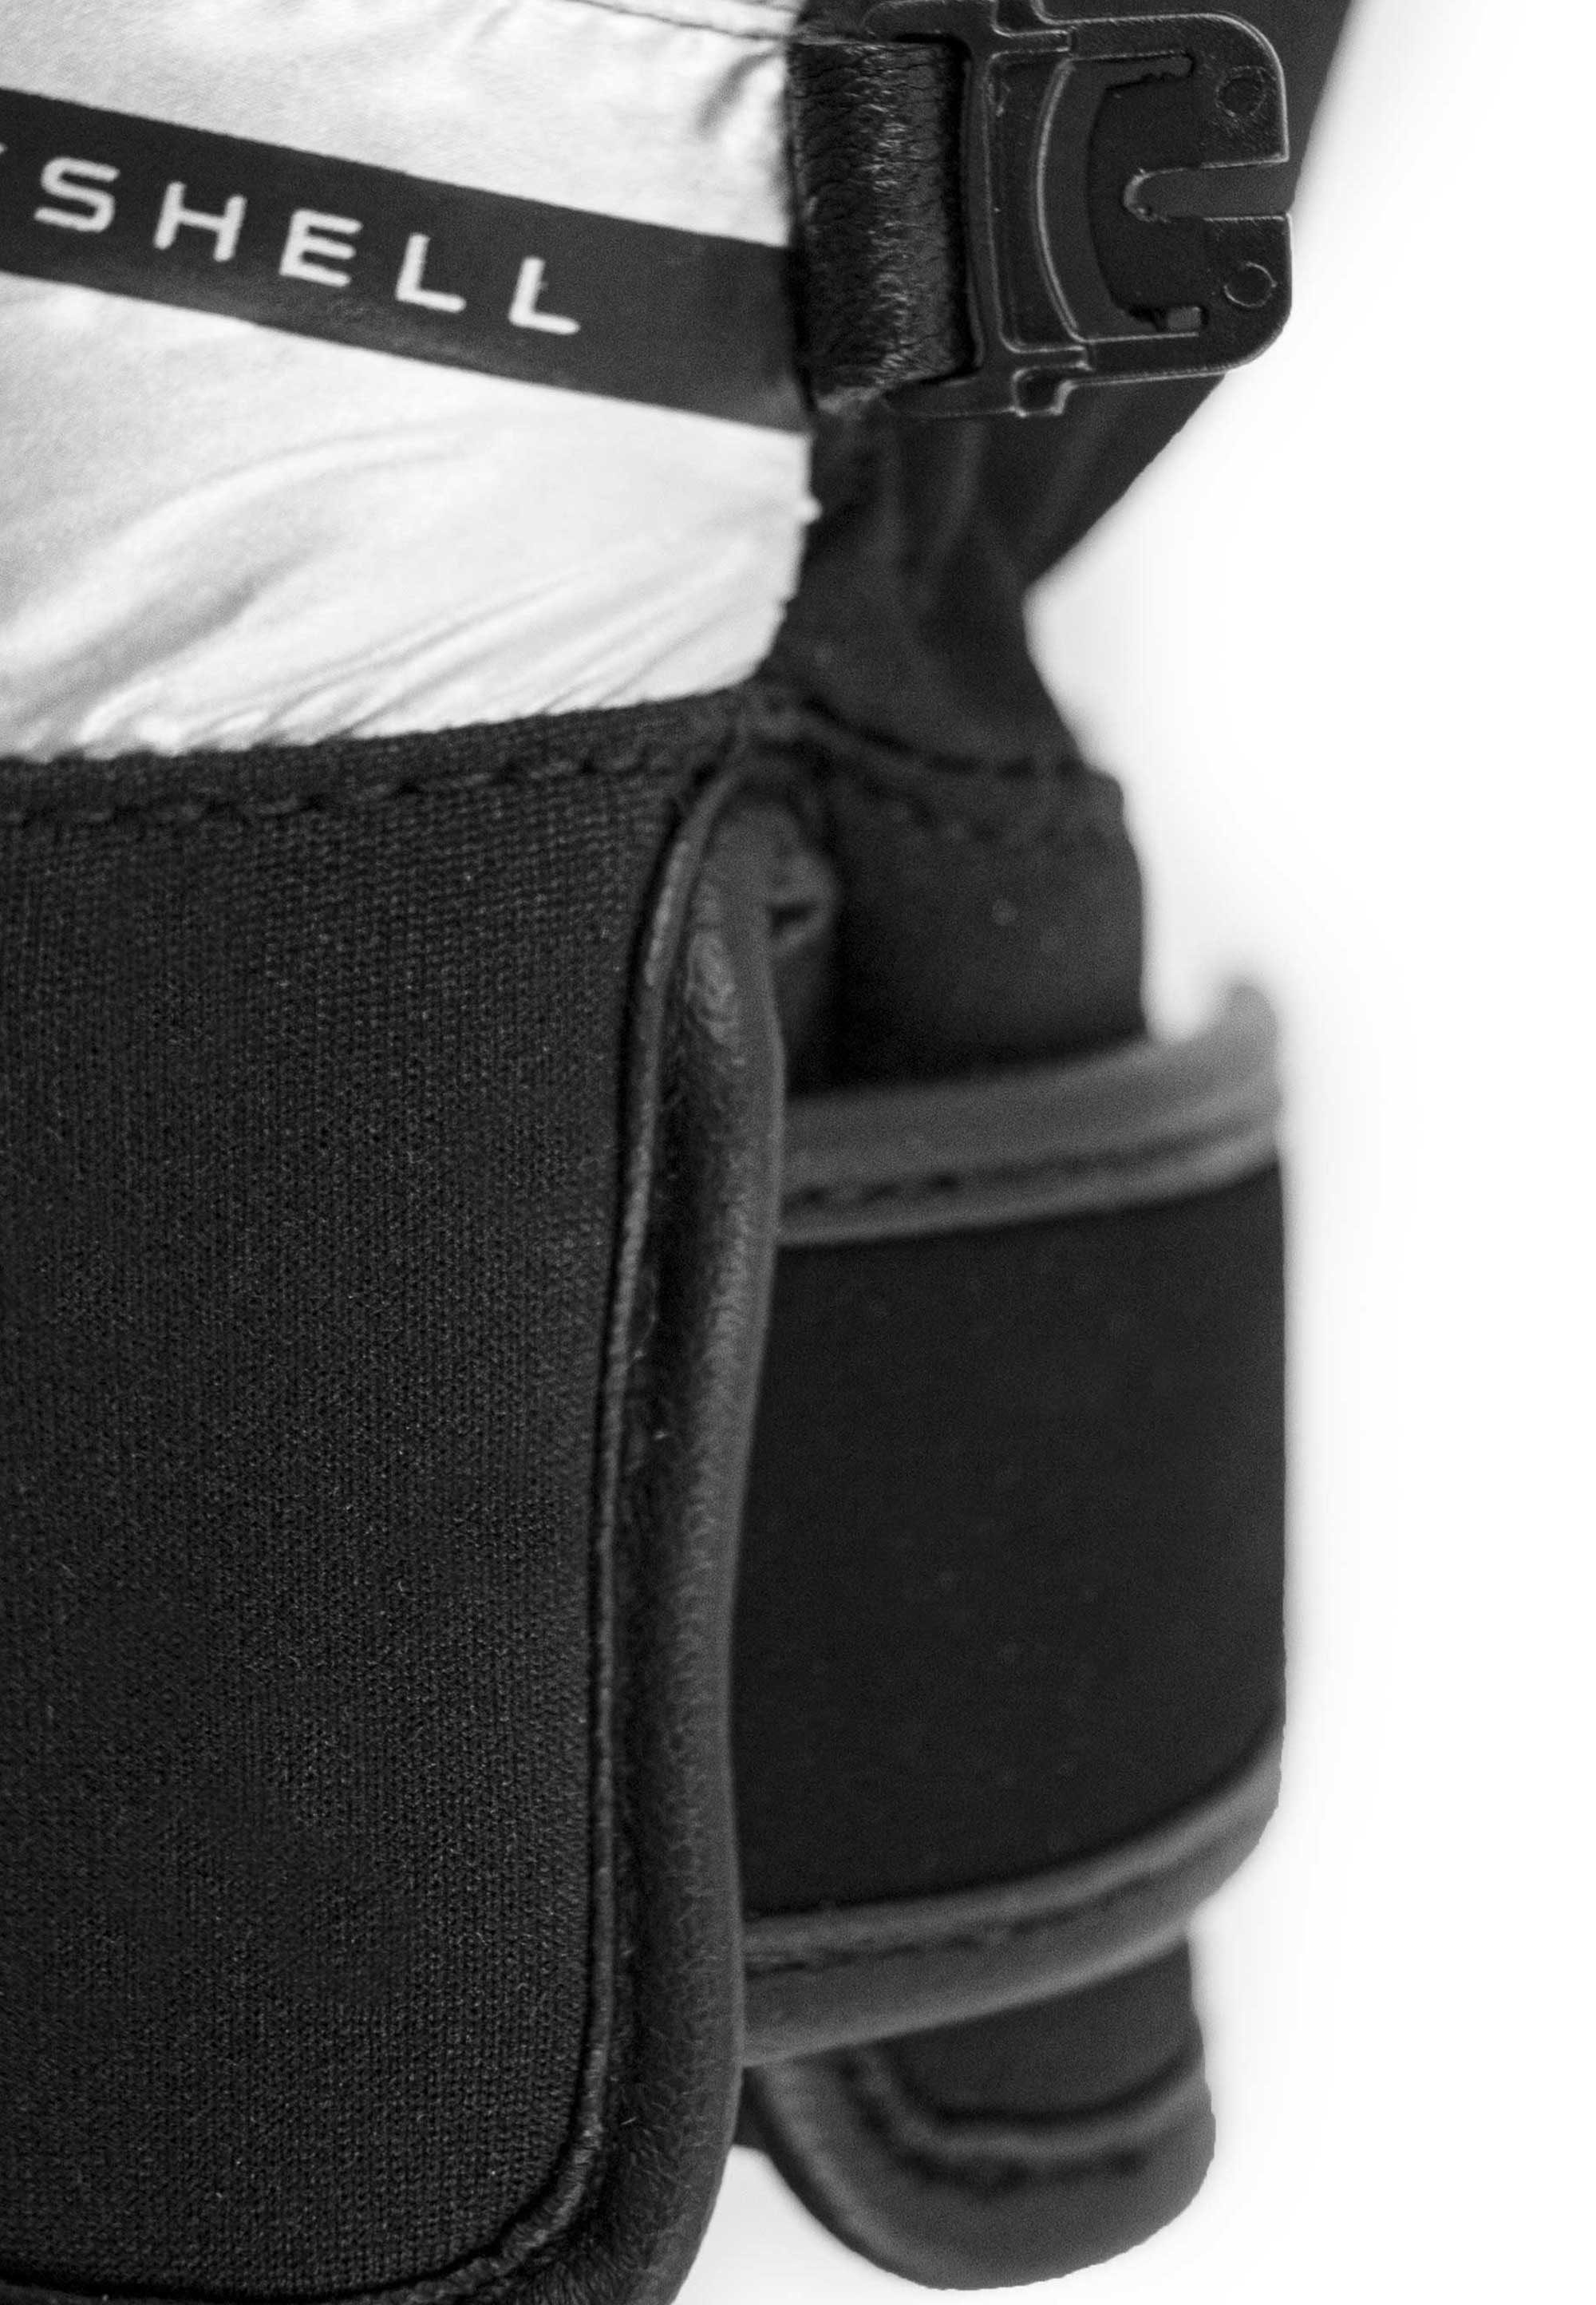 wasserdichtem STORMBLOXX™ Material Skihandschuhe Tessa schwarz-silberfarben aus Reusch und atmungsaktivem